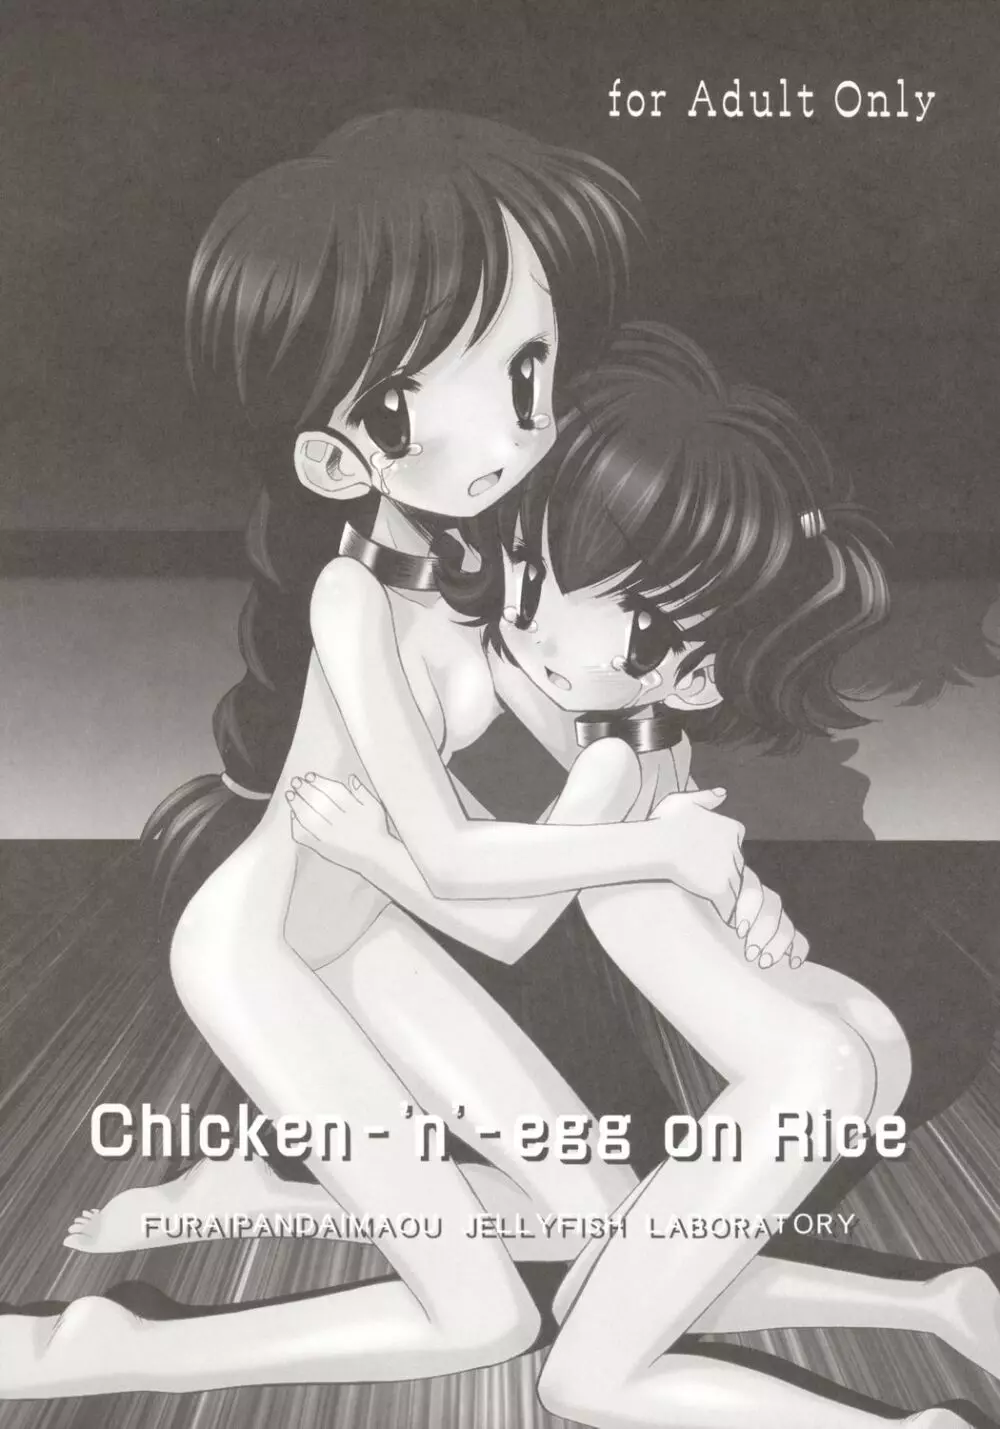 [ふらいぱん大魔王 (提灯暗光)] Chicken-‘n’-egg on Rice (とっとこハム太郎)